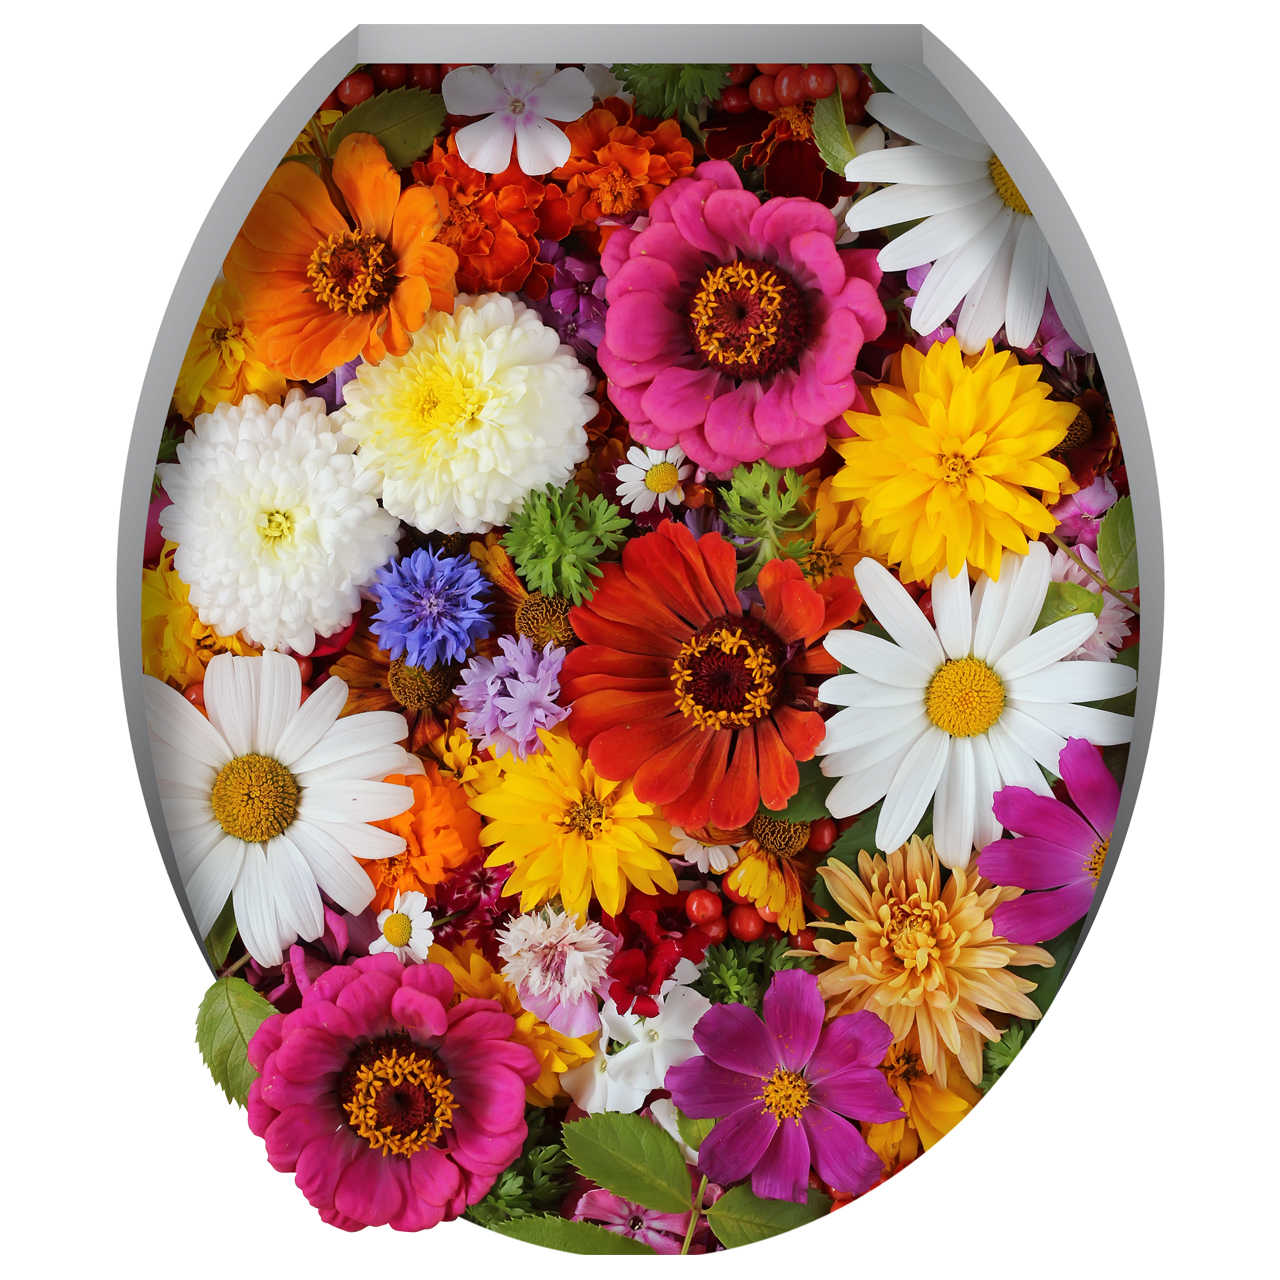 استیکر توالت فرنگی ژیوار طرح گلهای رنگی